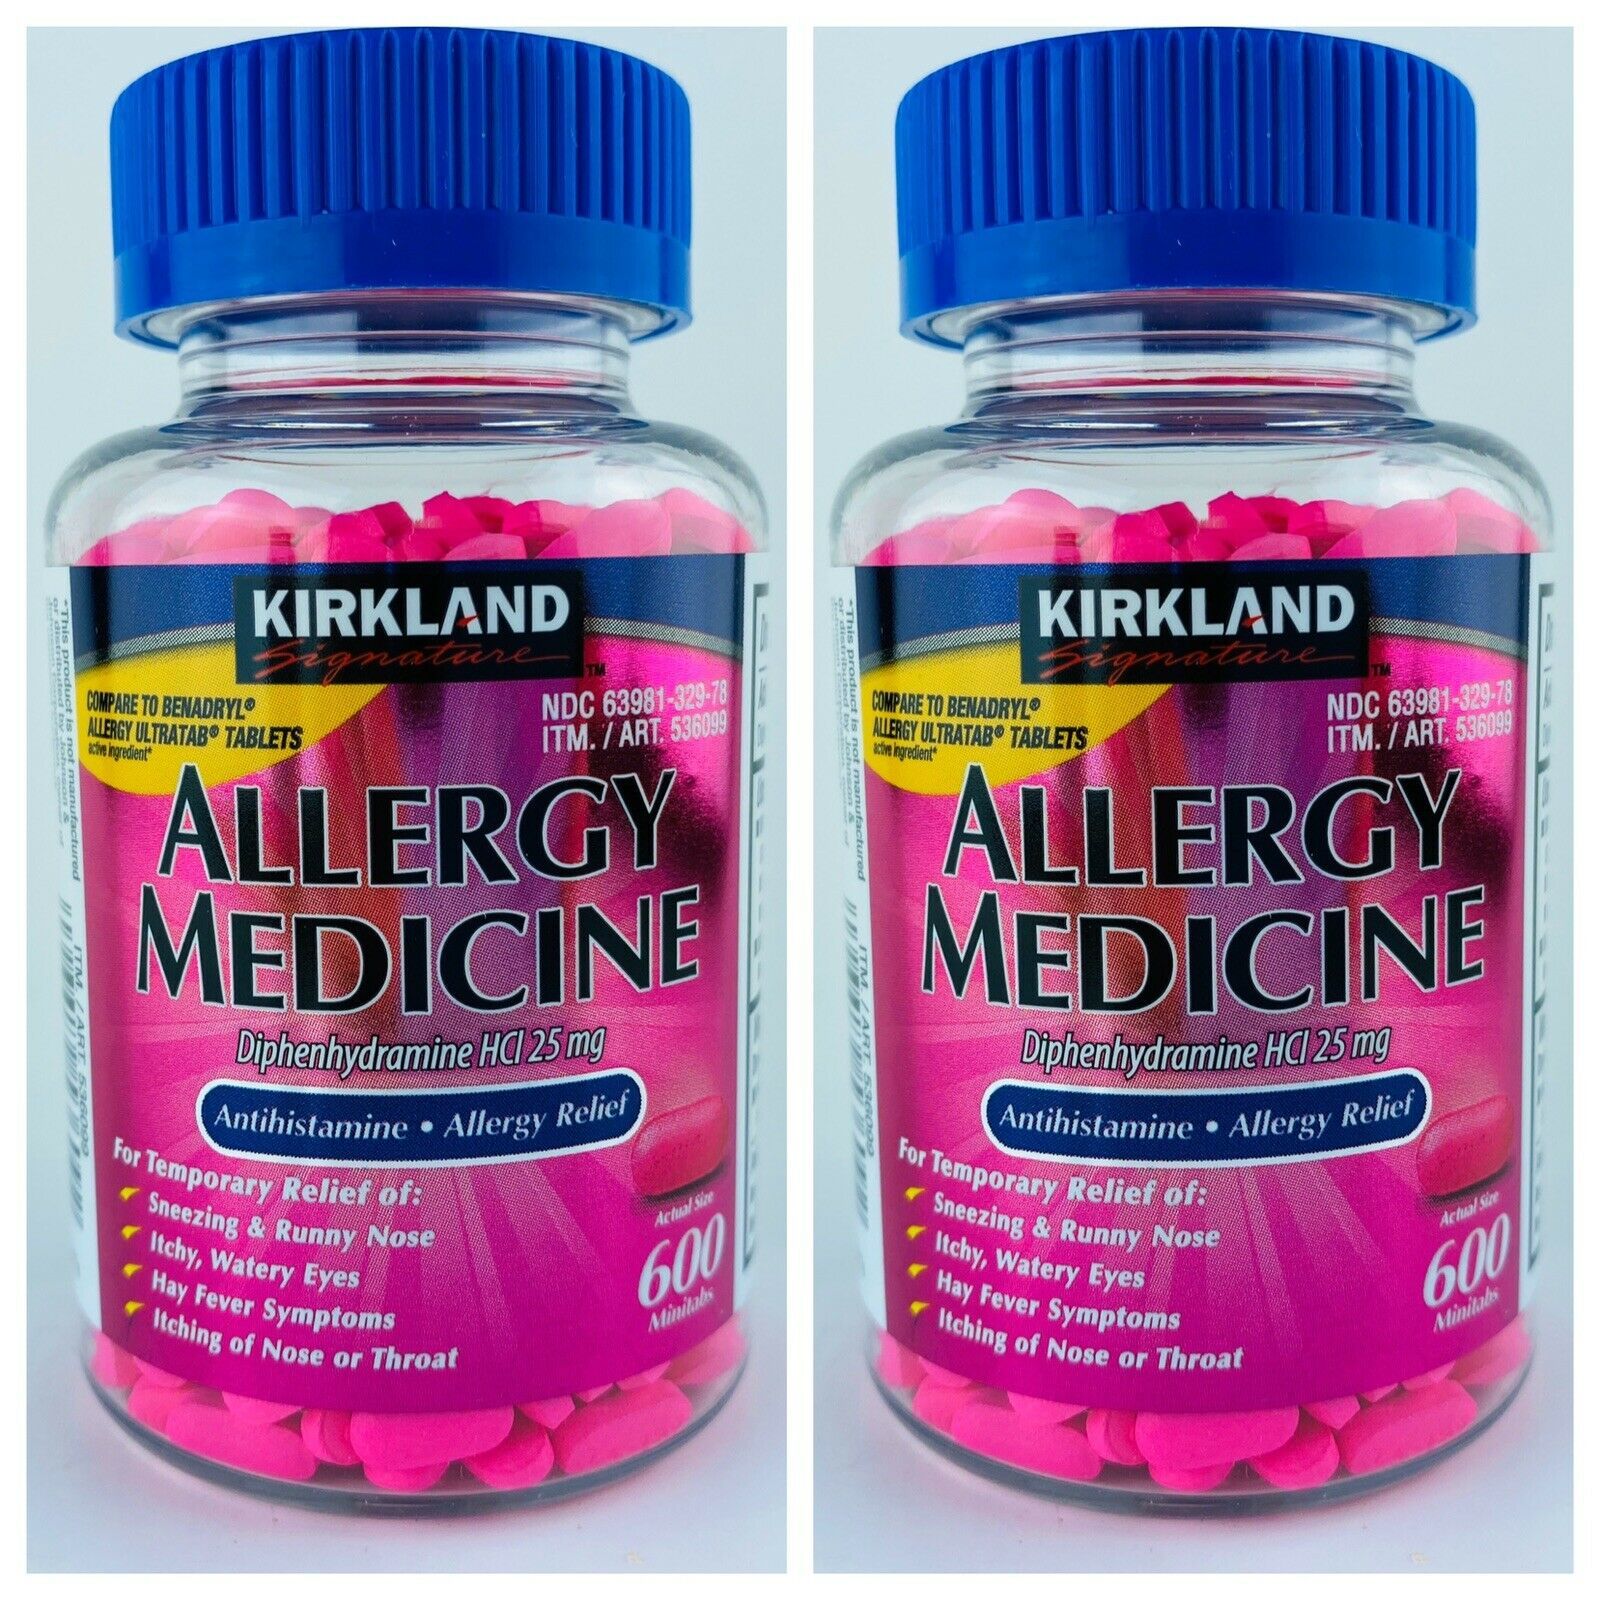 Primary image for 2-Pack 600 Minitabs Kirkland Signature ALLERGY MEDICINE Diphenhydramine HCI 25mg